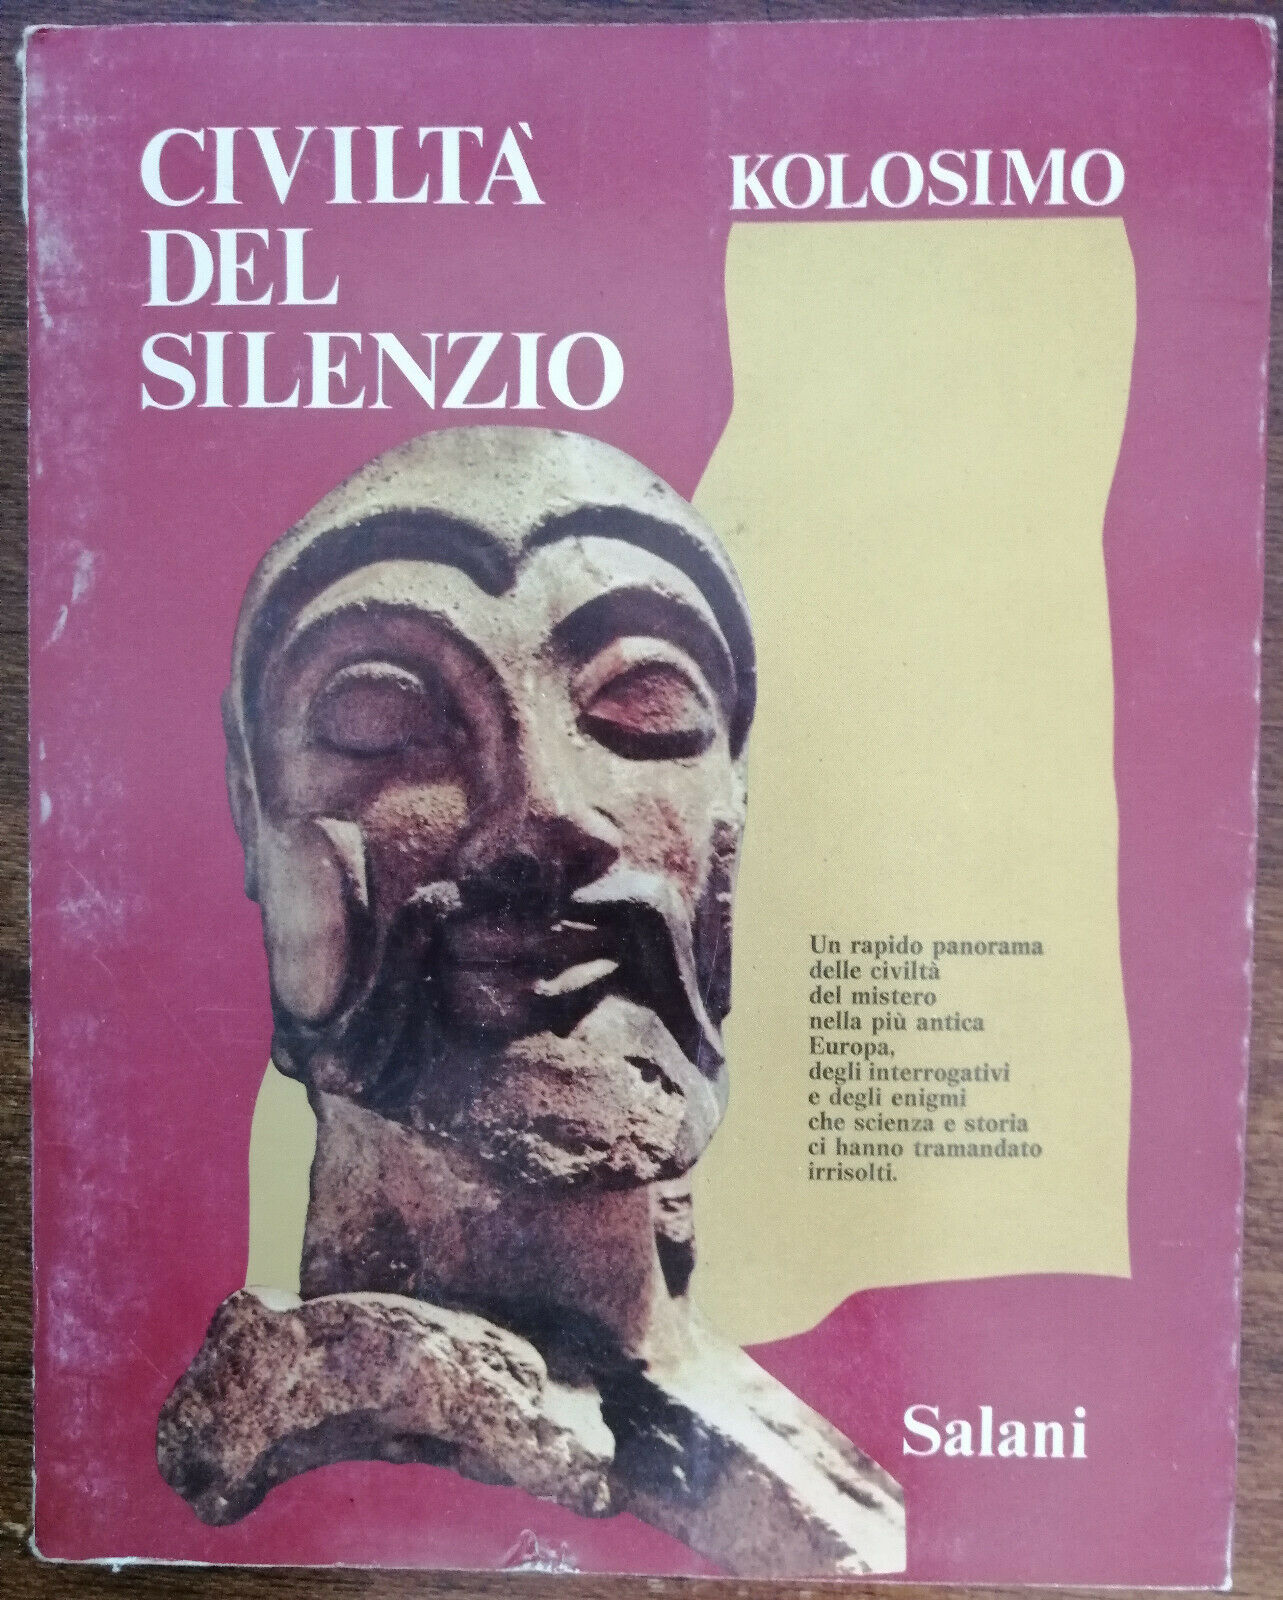 Civilt? del silenzio - Kolosimo - Salani, 1978 - A